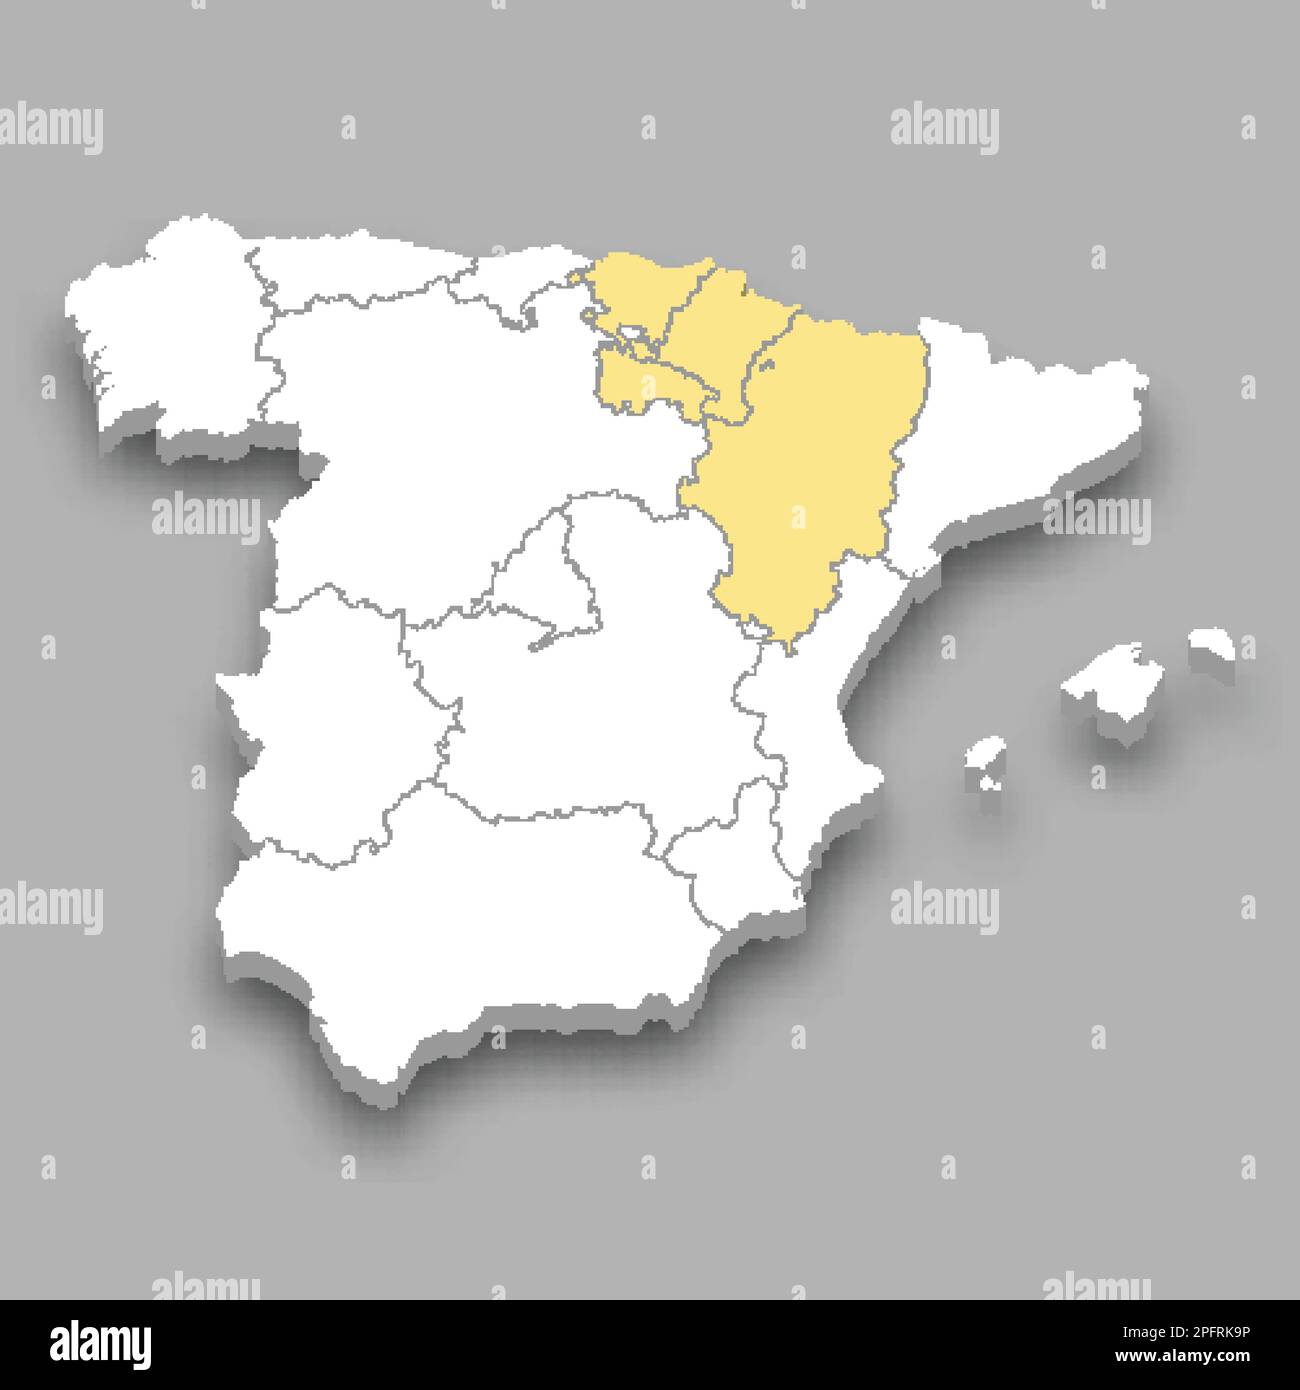 Position der Region Nordosten innerhalb der isometrischen 3D-Karte von Spanien Stock Vektor